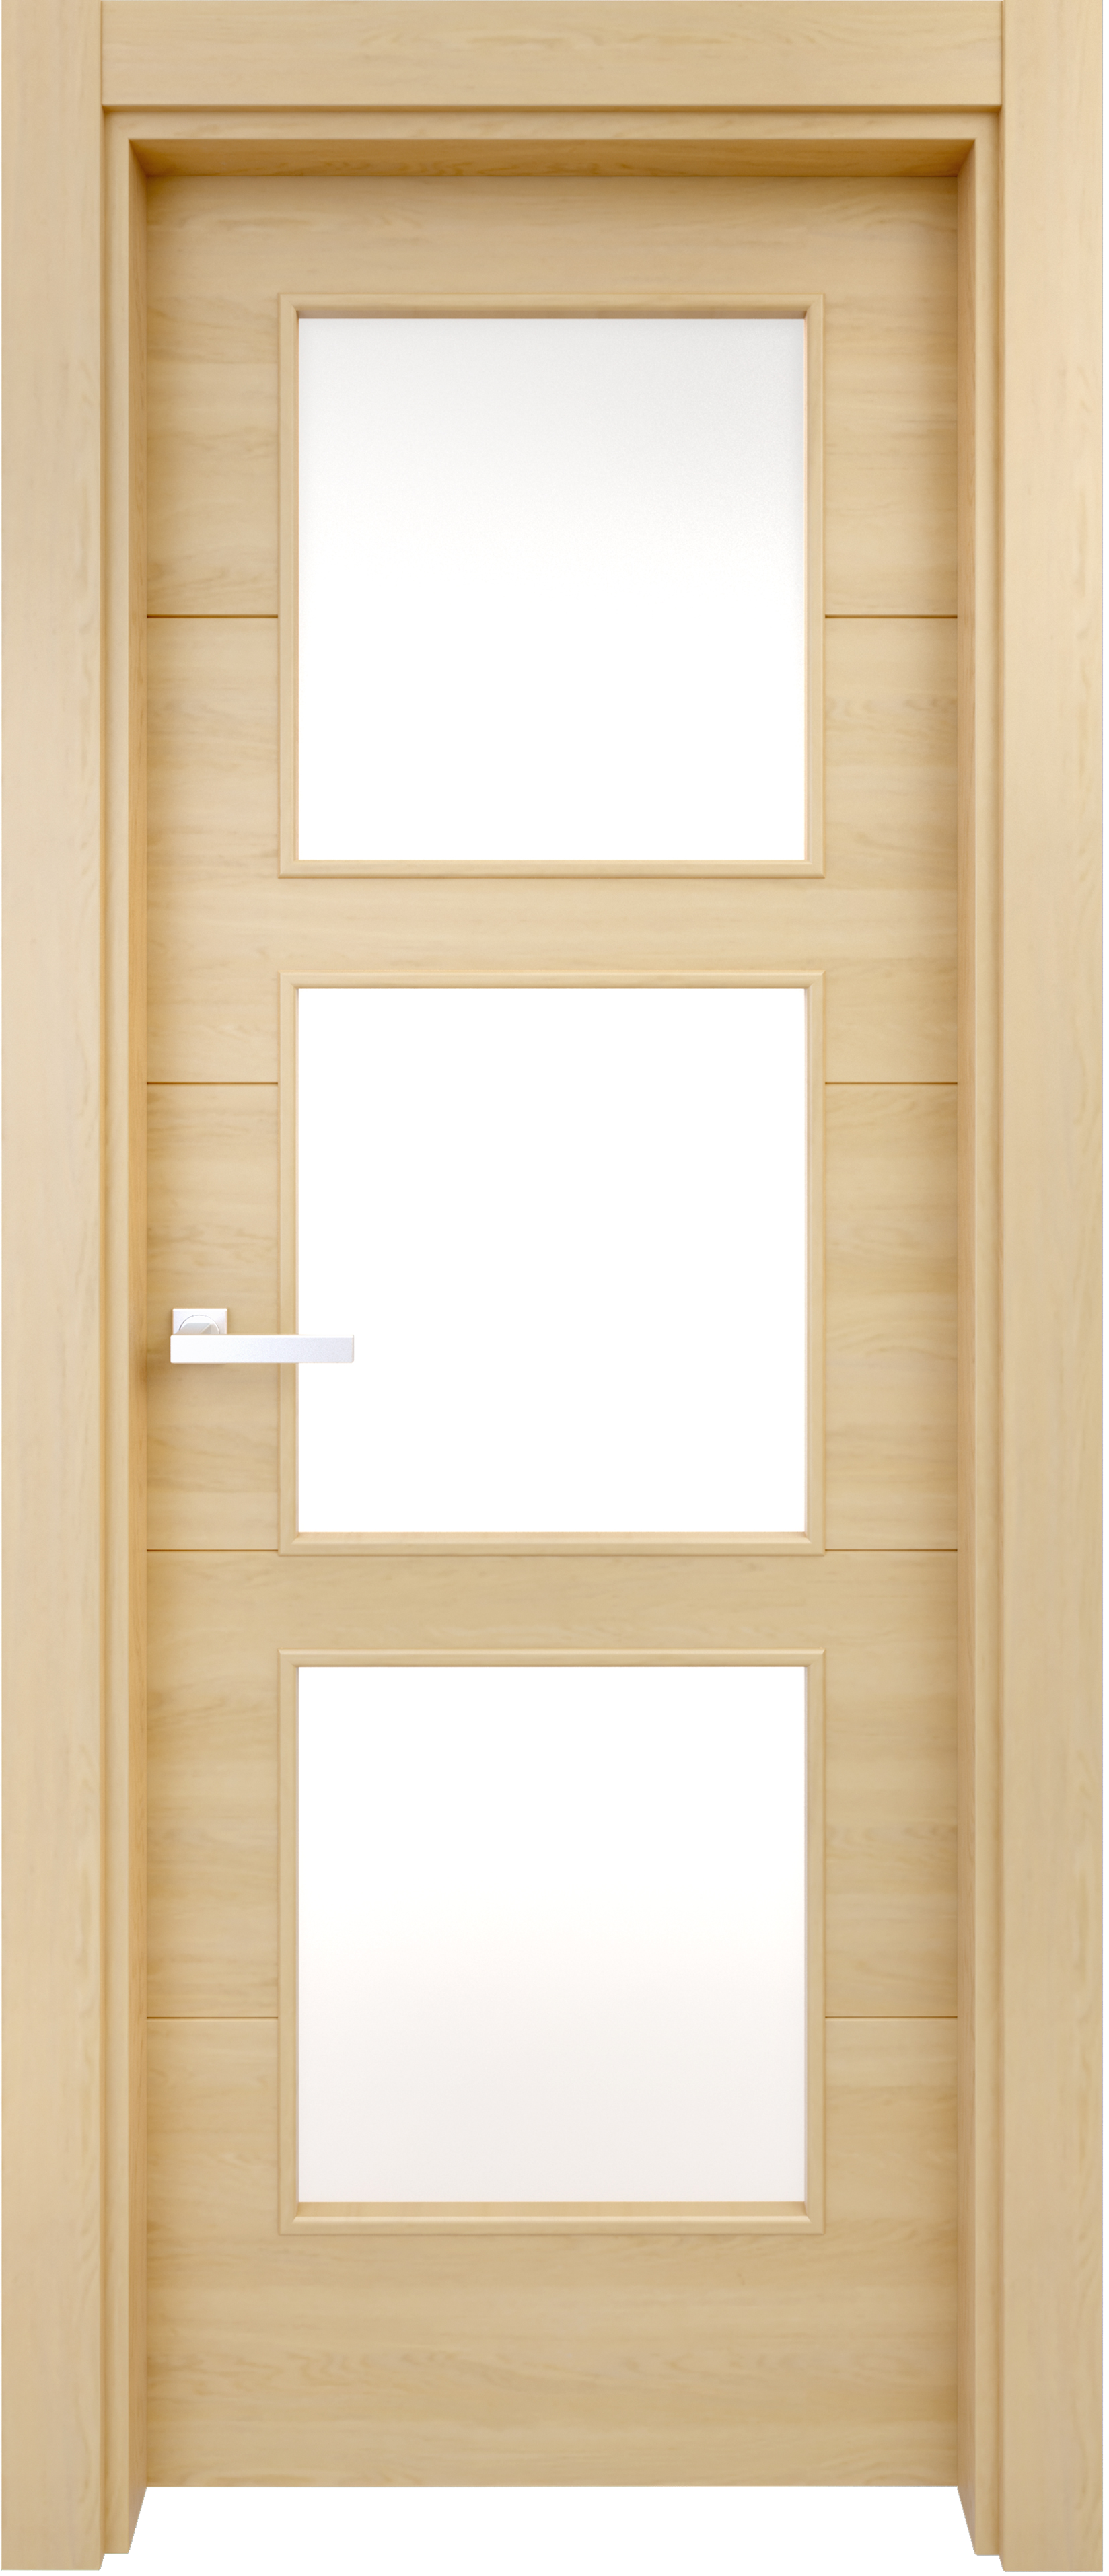 Puerta berna roble apertura derecha con cristal 9x62.5cm